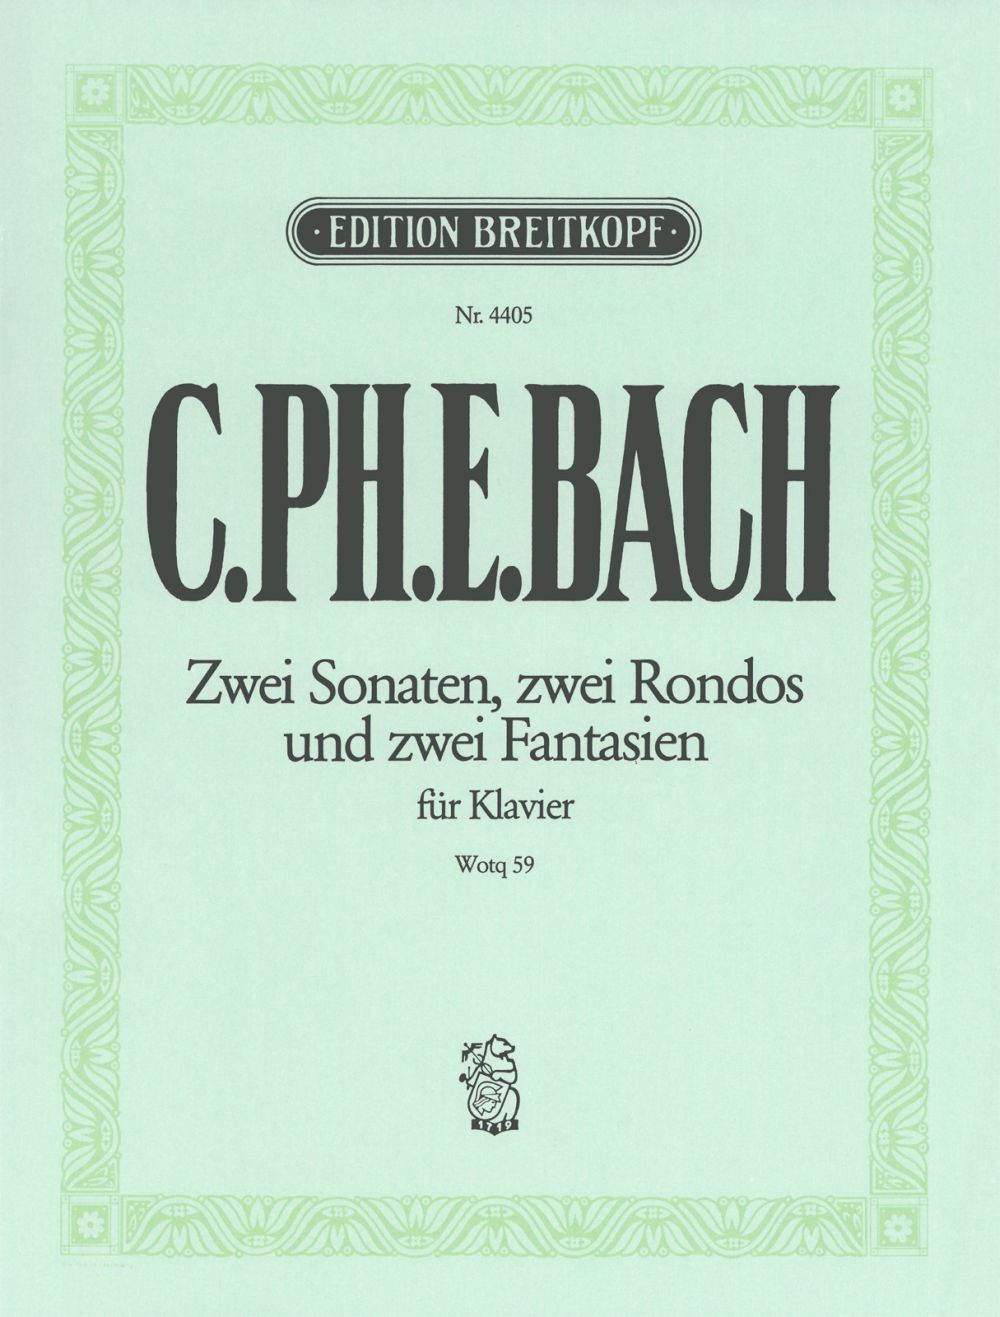 C.P.E. Bach: Keyboard Sonatas, Fantasies and Rondos, Wq. 59